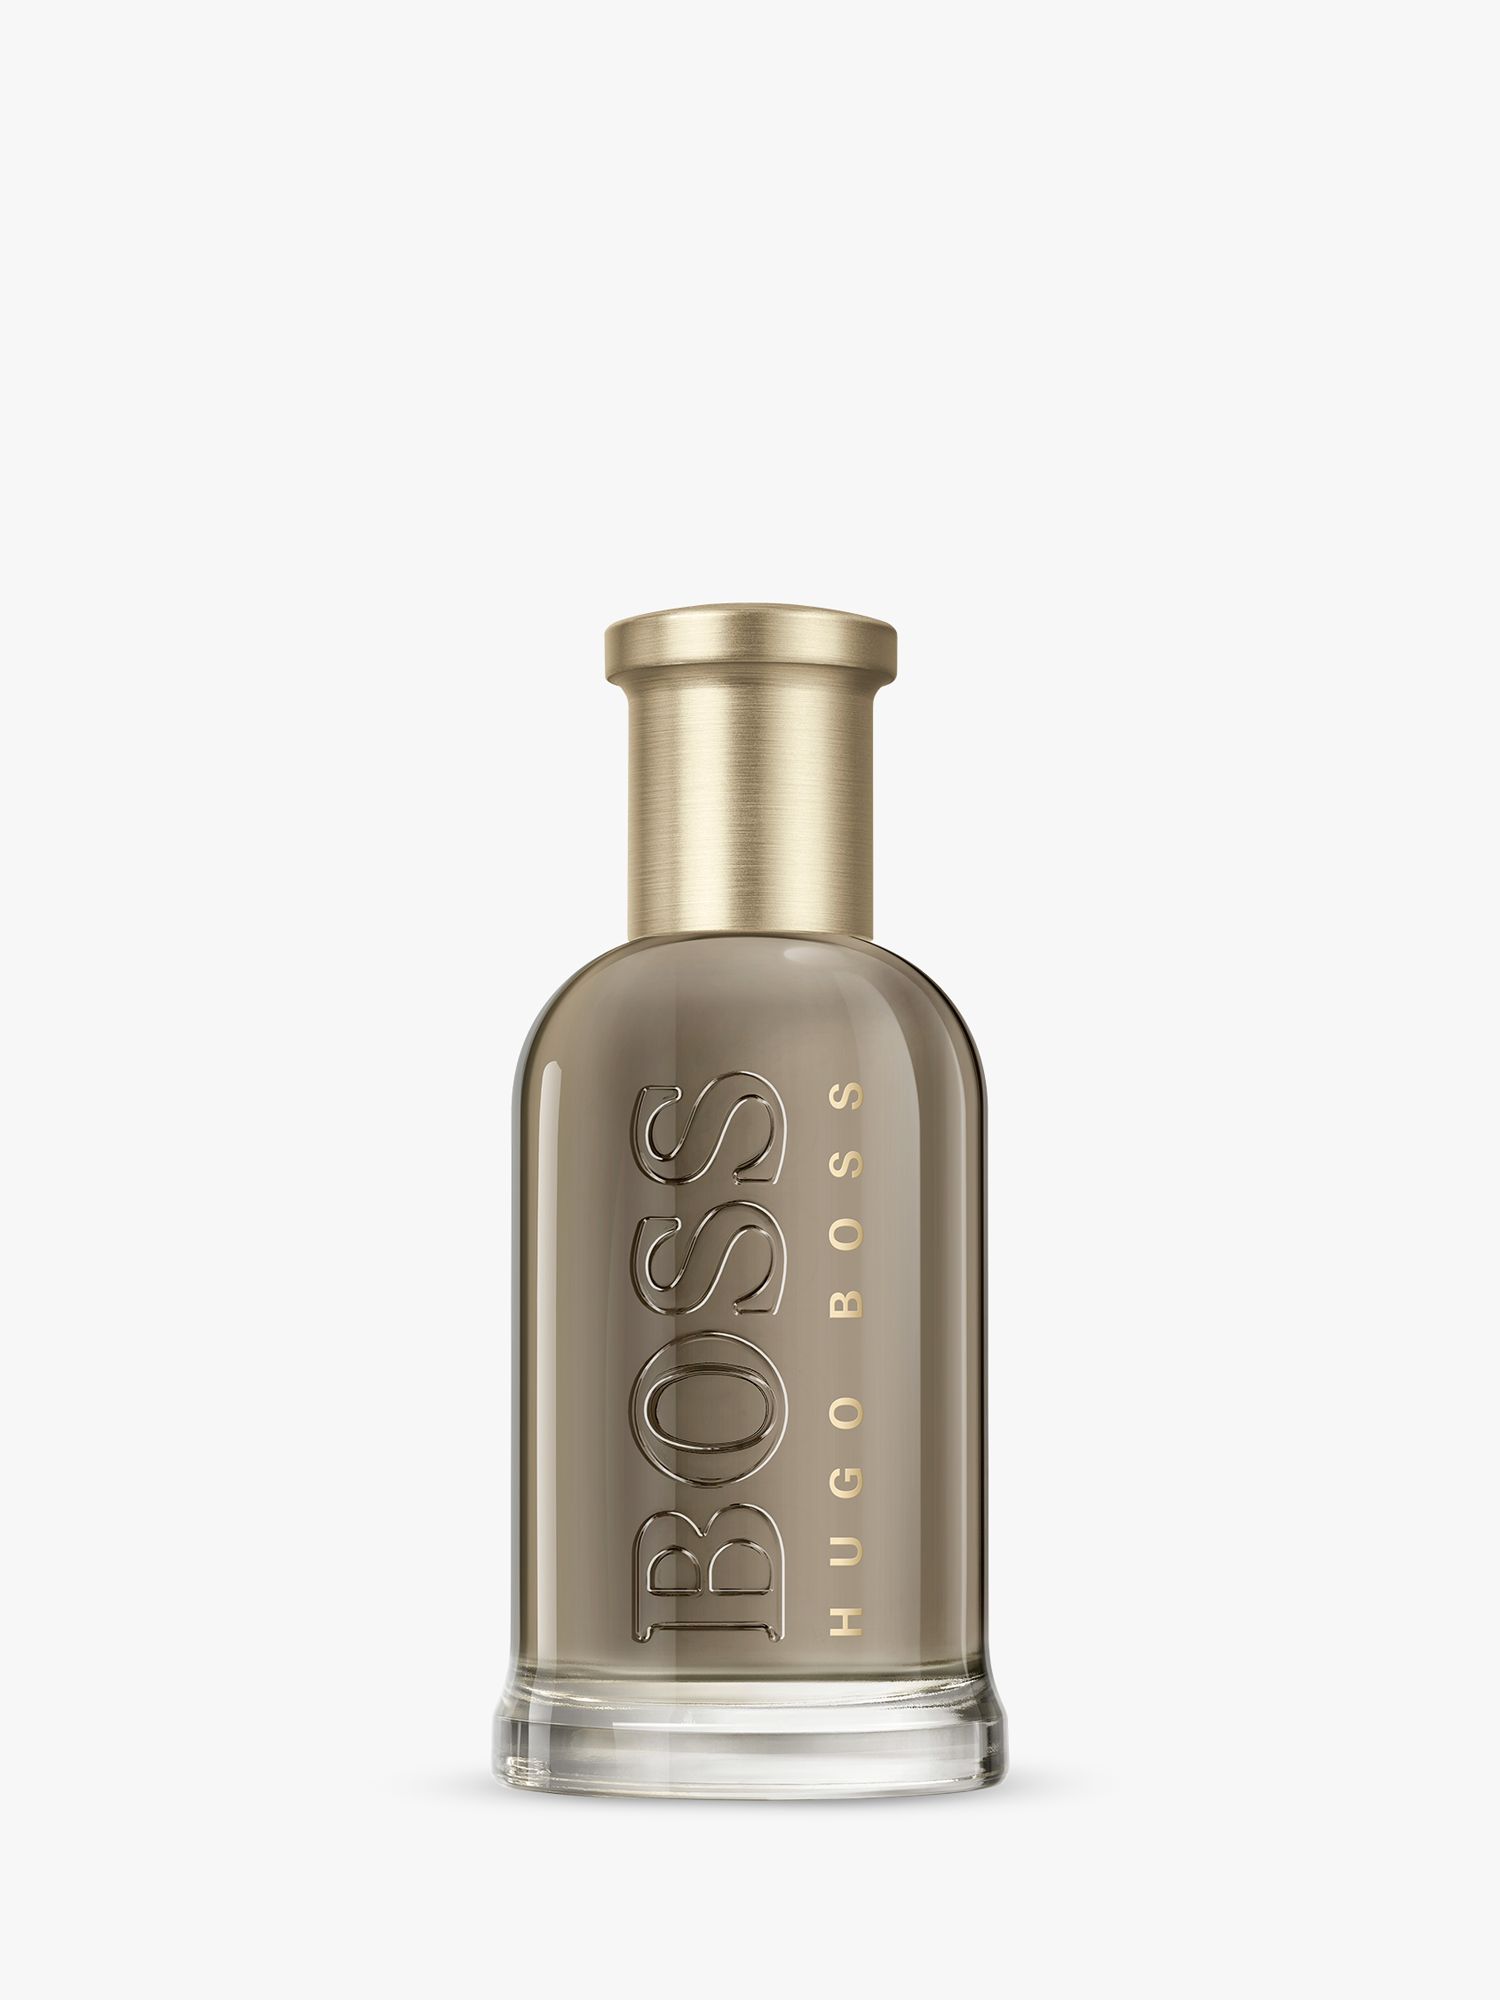 HUGO BOSS BOSS Bottled Eau de Parfum, 50ml 1